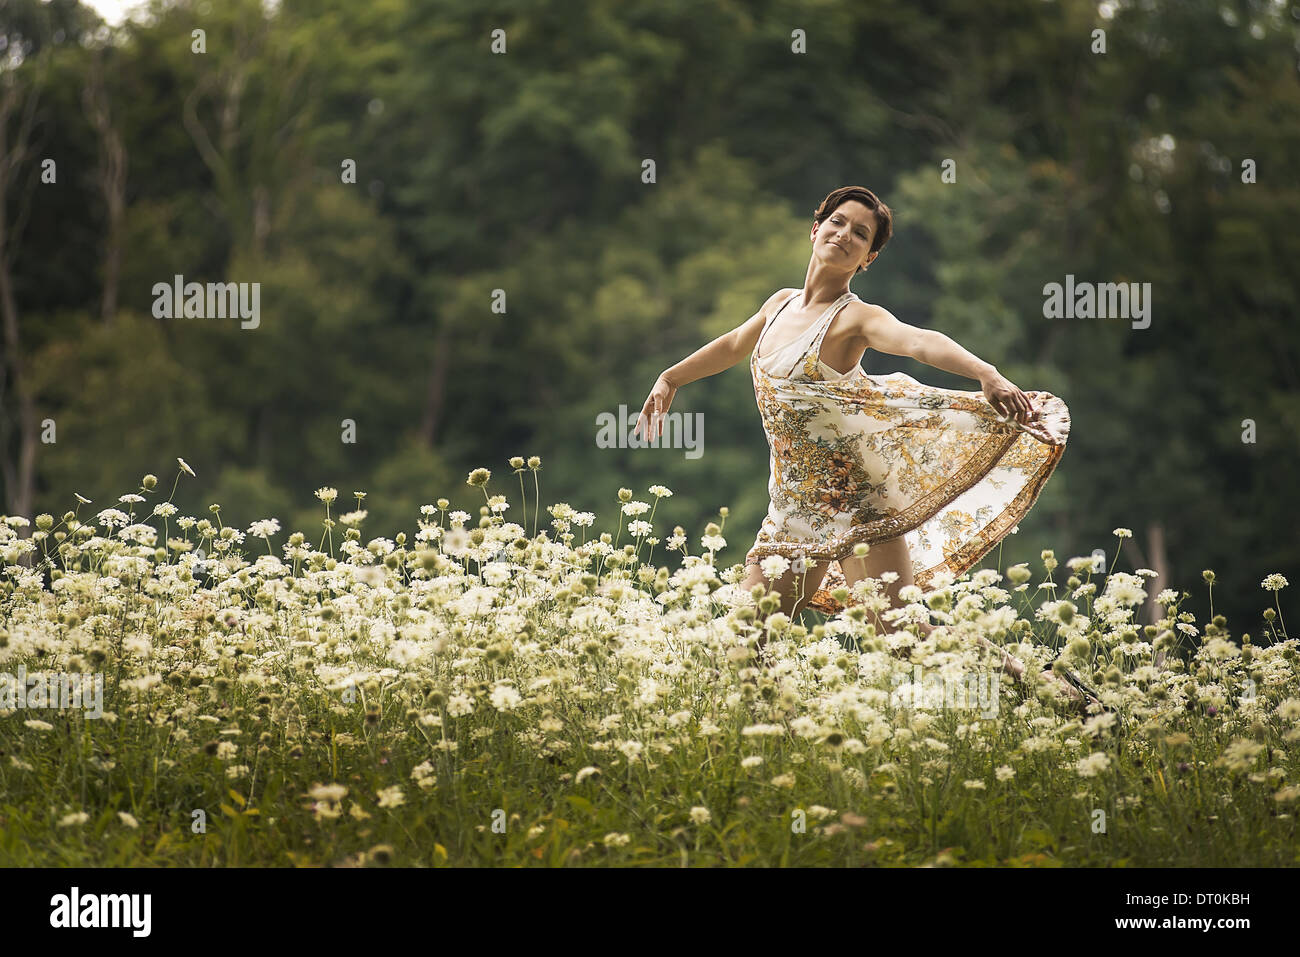 Nueva York, EE.UU. Woodstock mujer bailando en el campo de flores silvestres Foto de stock